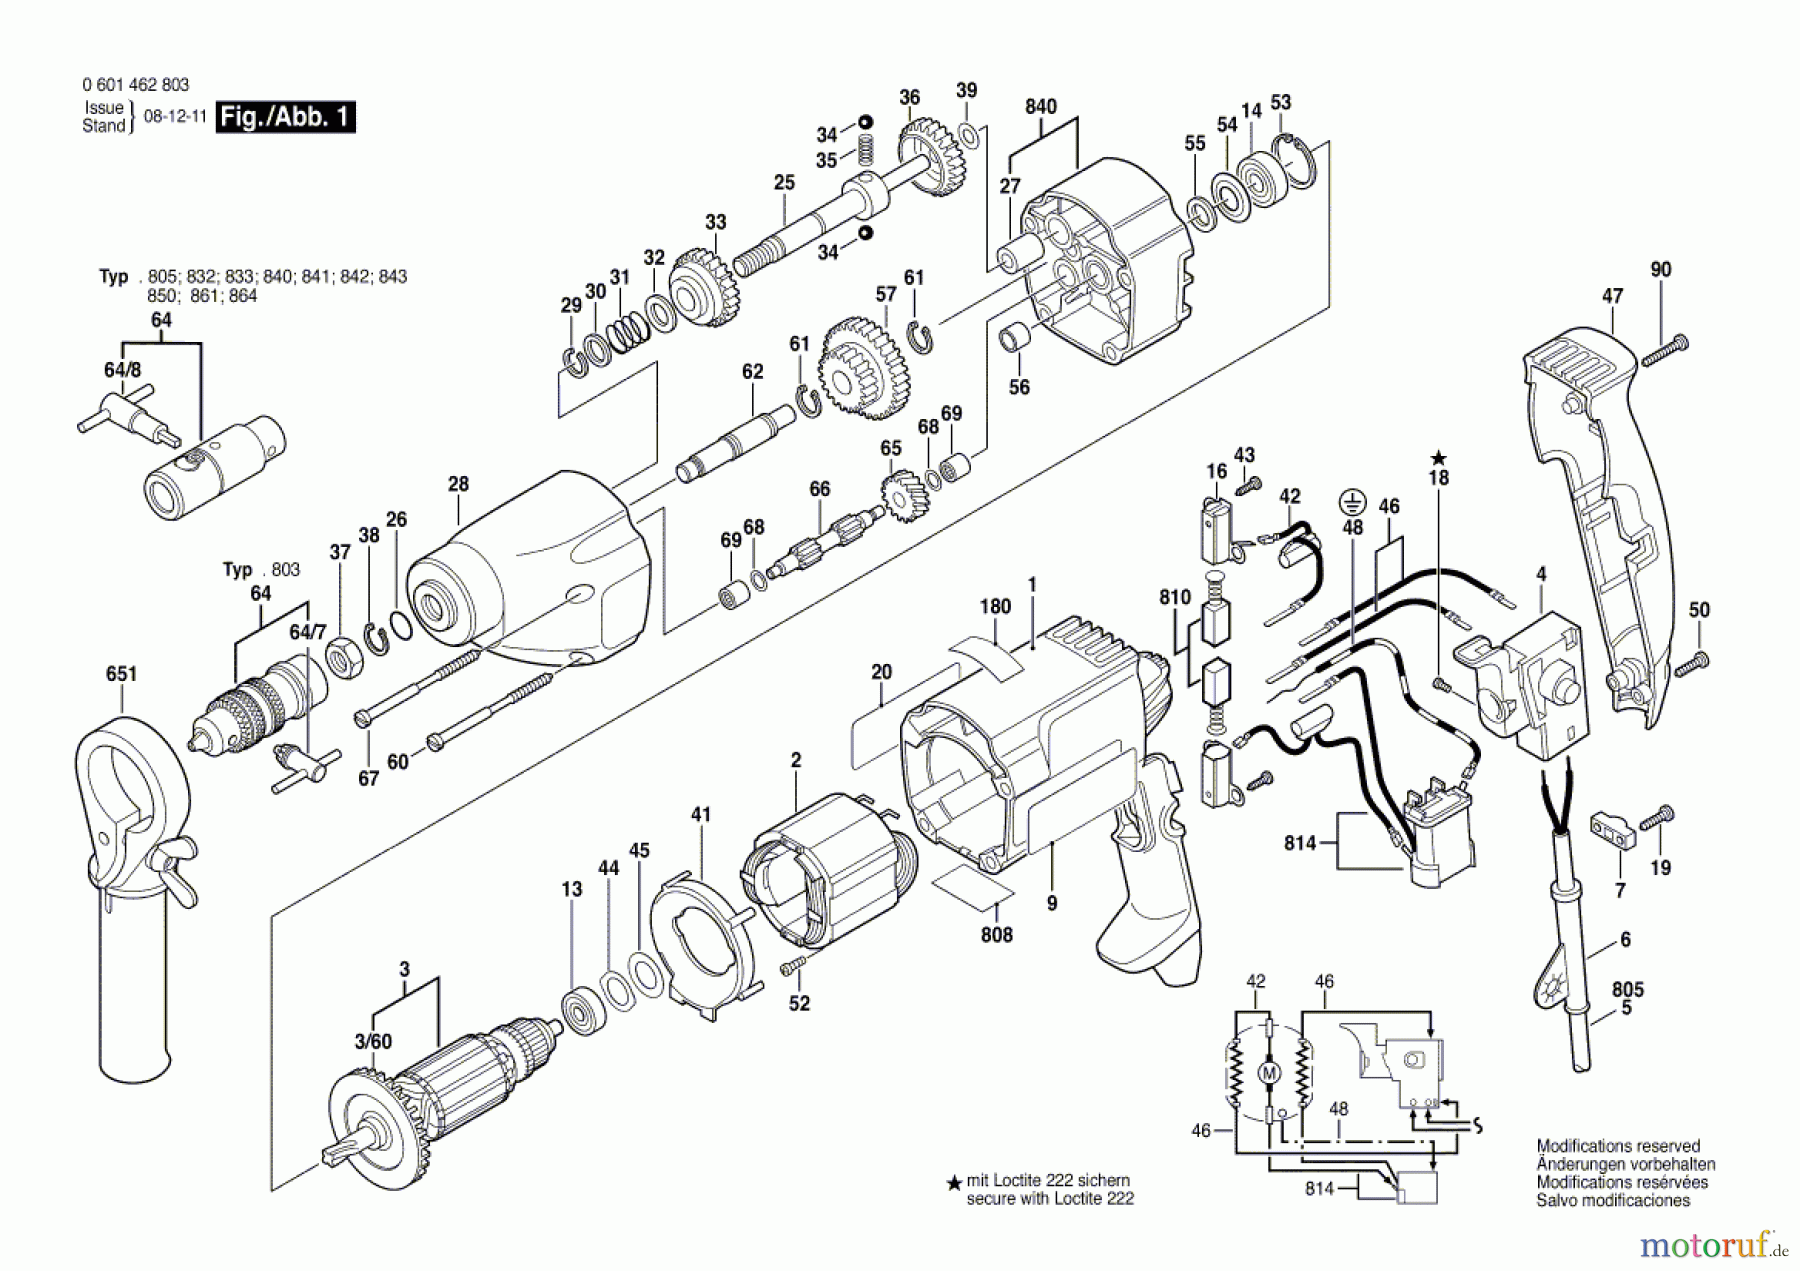  Bosch Werkzeug Gewindeschneider GGW 10 E Seite 1